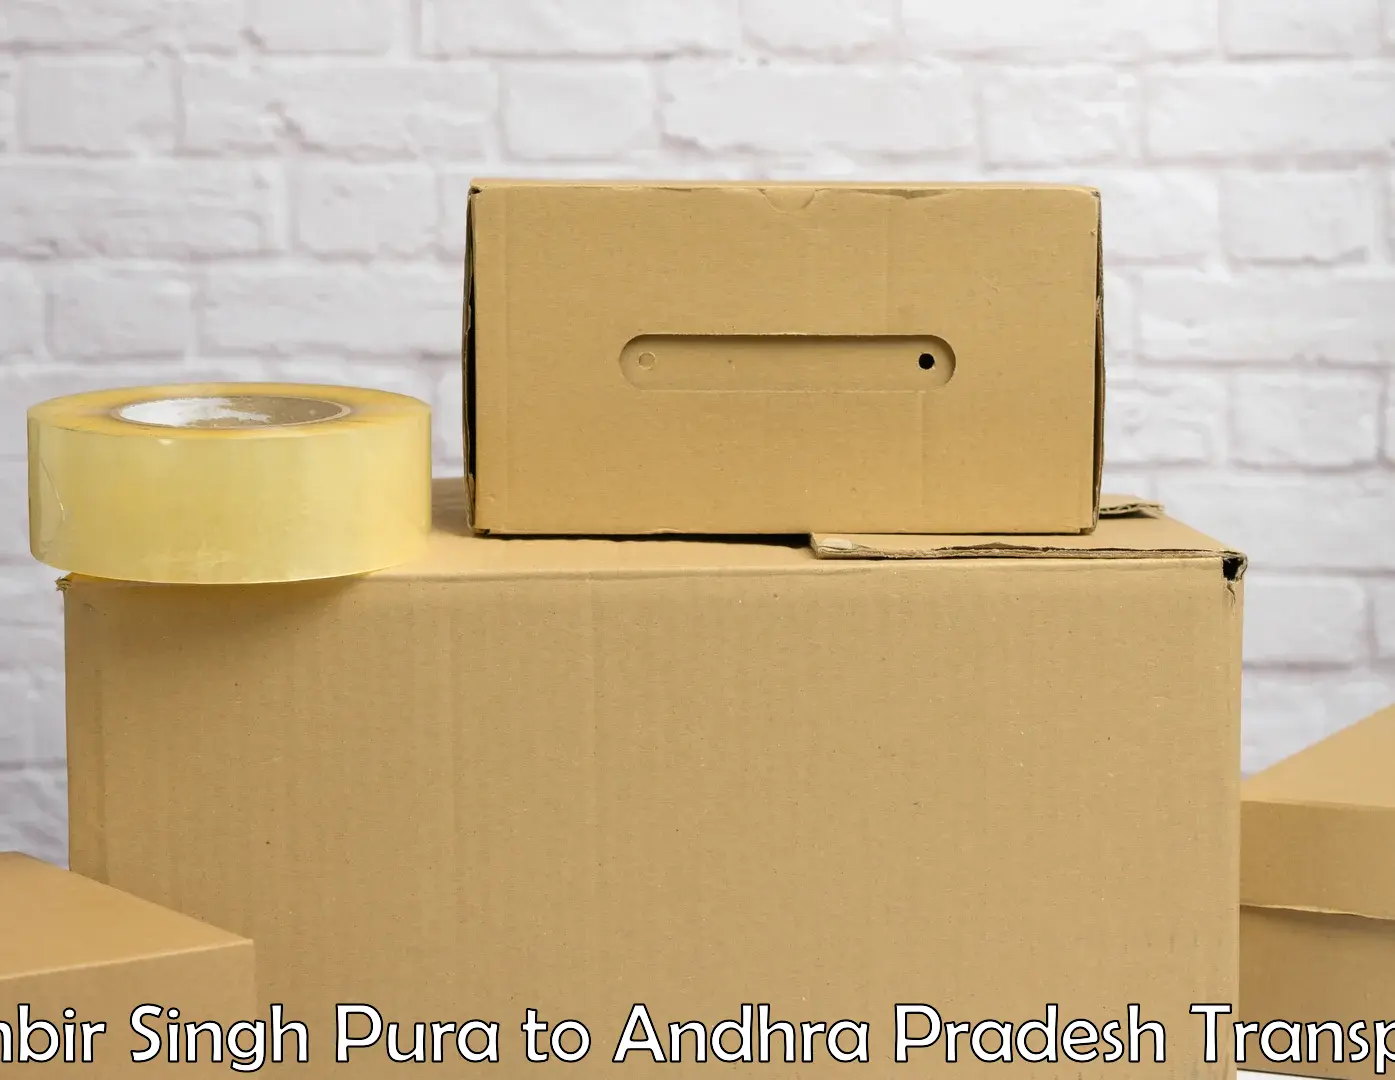 Delivery service Ranbir Singh Pura to Gudur